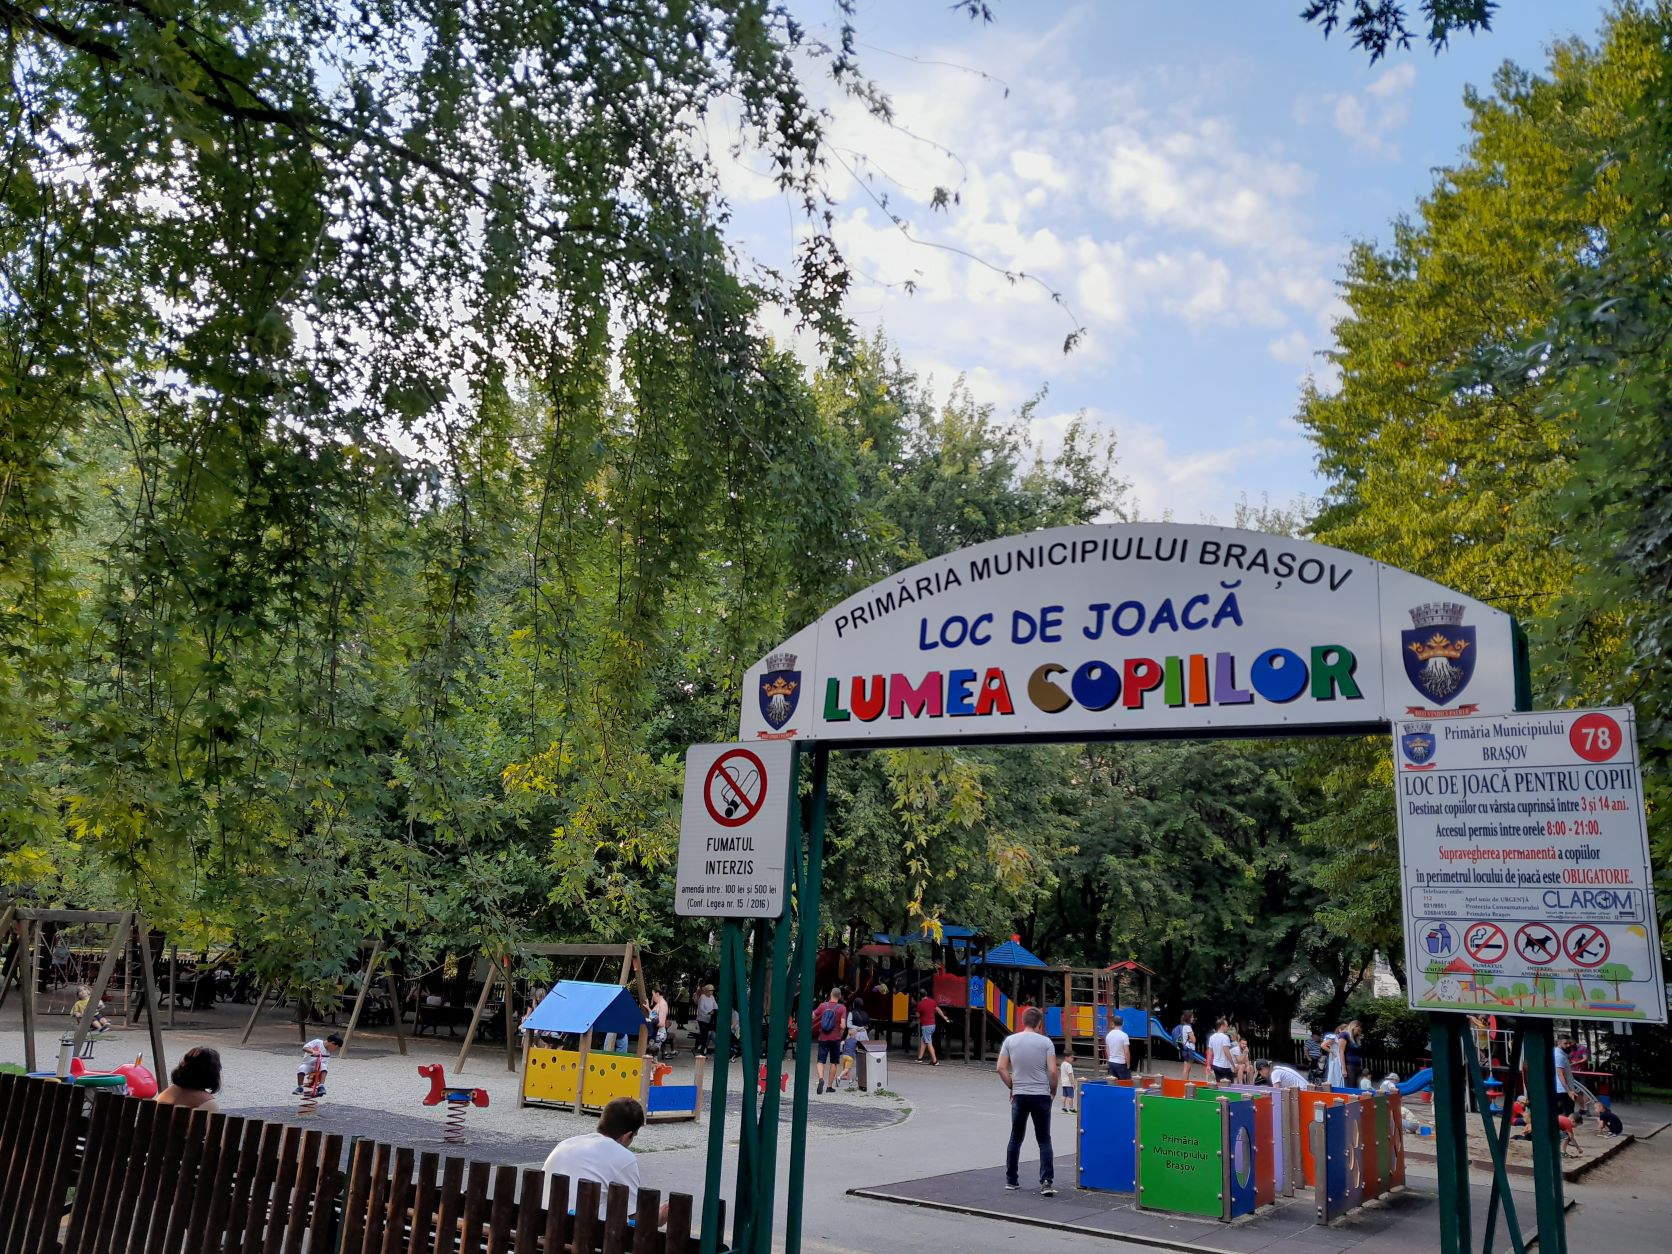 Public Playground in Brasov